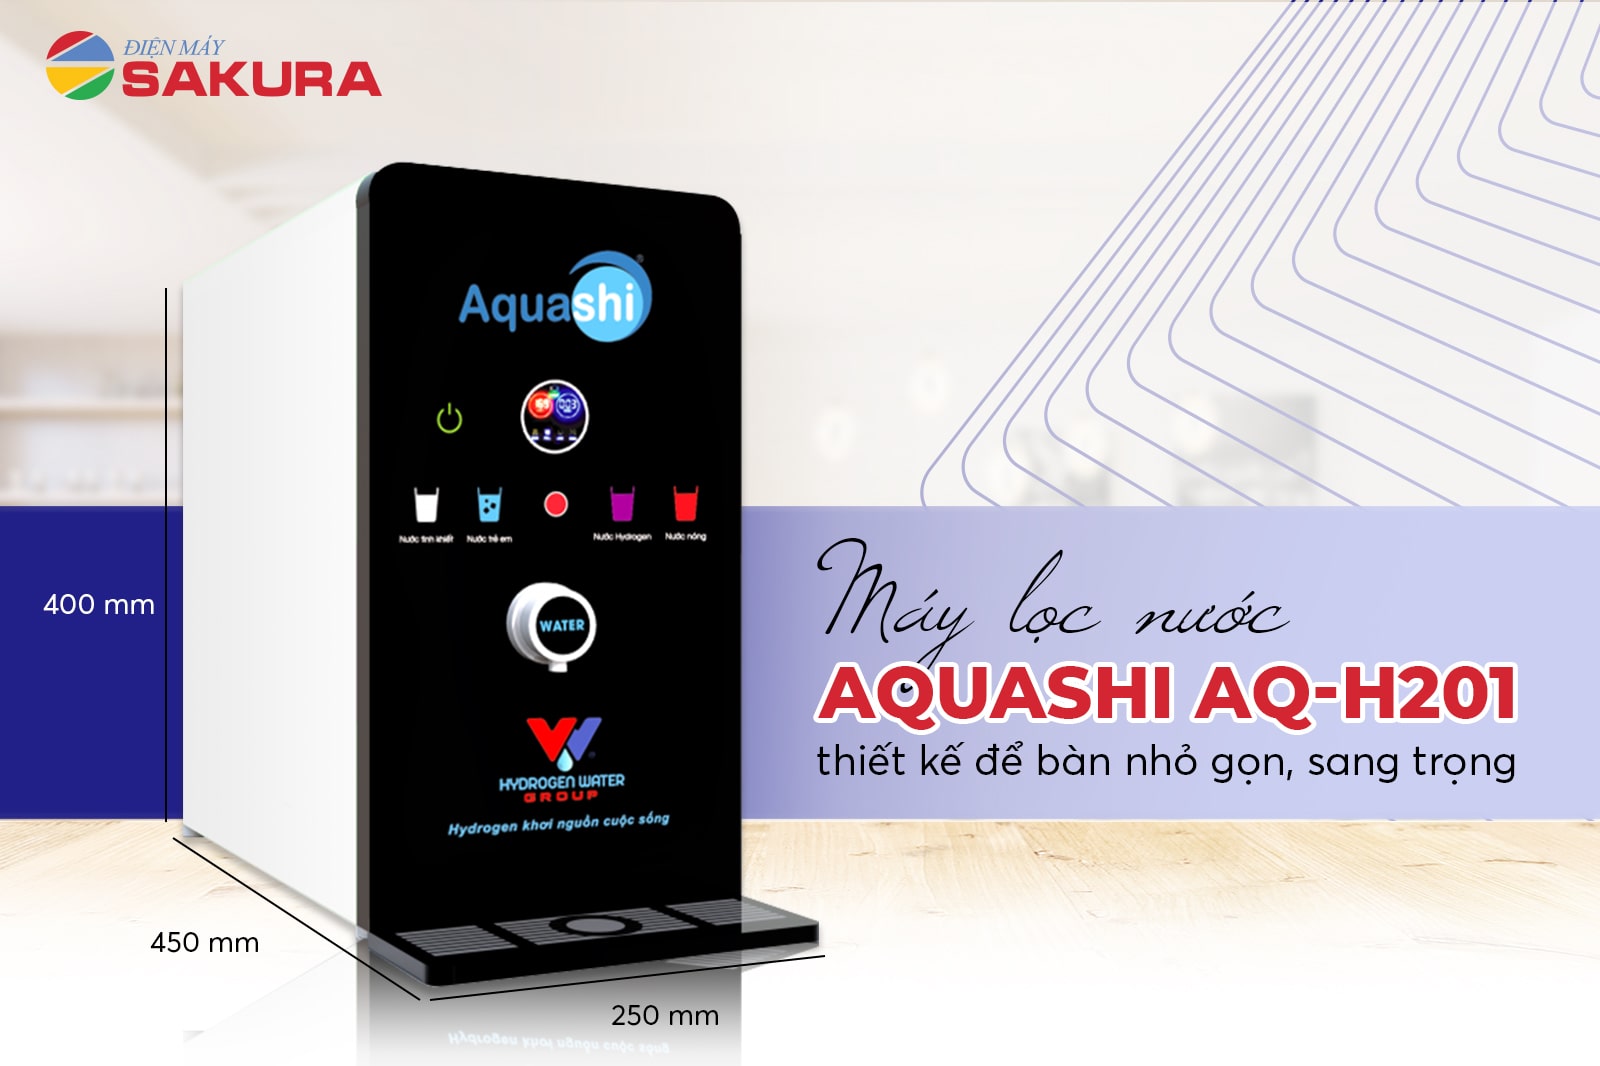 Aquashi AQ-H201 để bàn nhỏ gọn, sang trọng